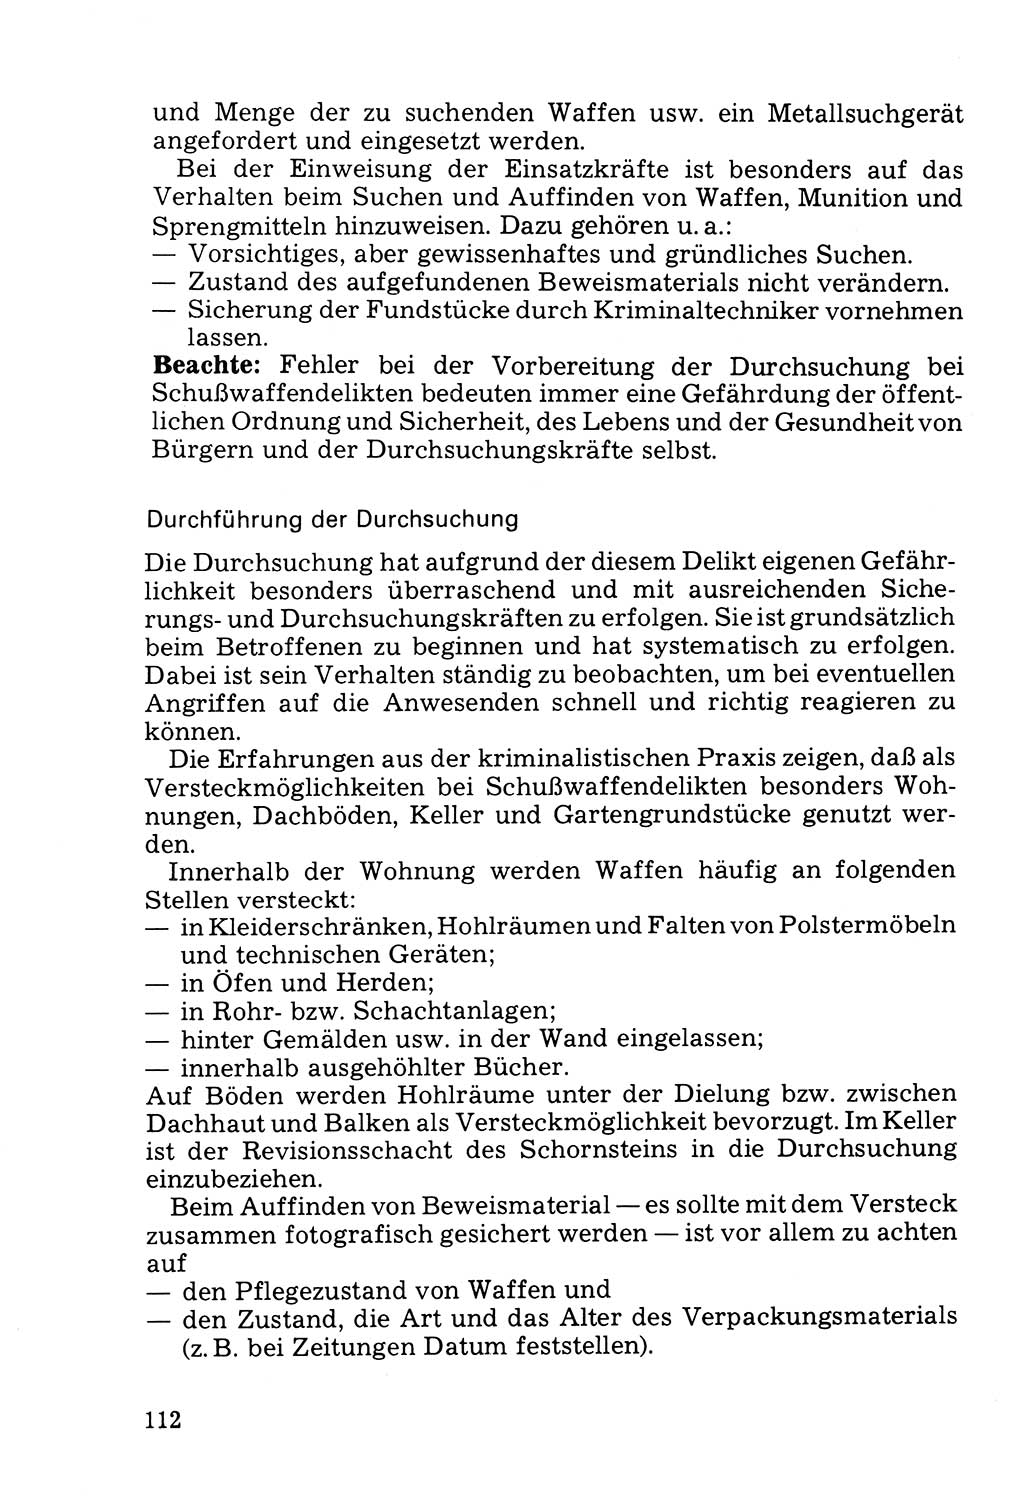 Die Durchsuchung und die Beschlagnahme [Deutsche Demokratische Republik (DDR)] 1979, Seite 112 (Durchs. Beschl. DDR 1979, S. 112)